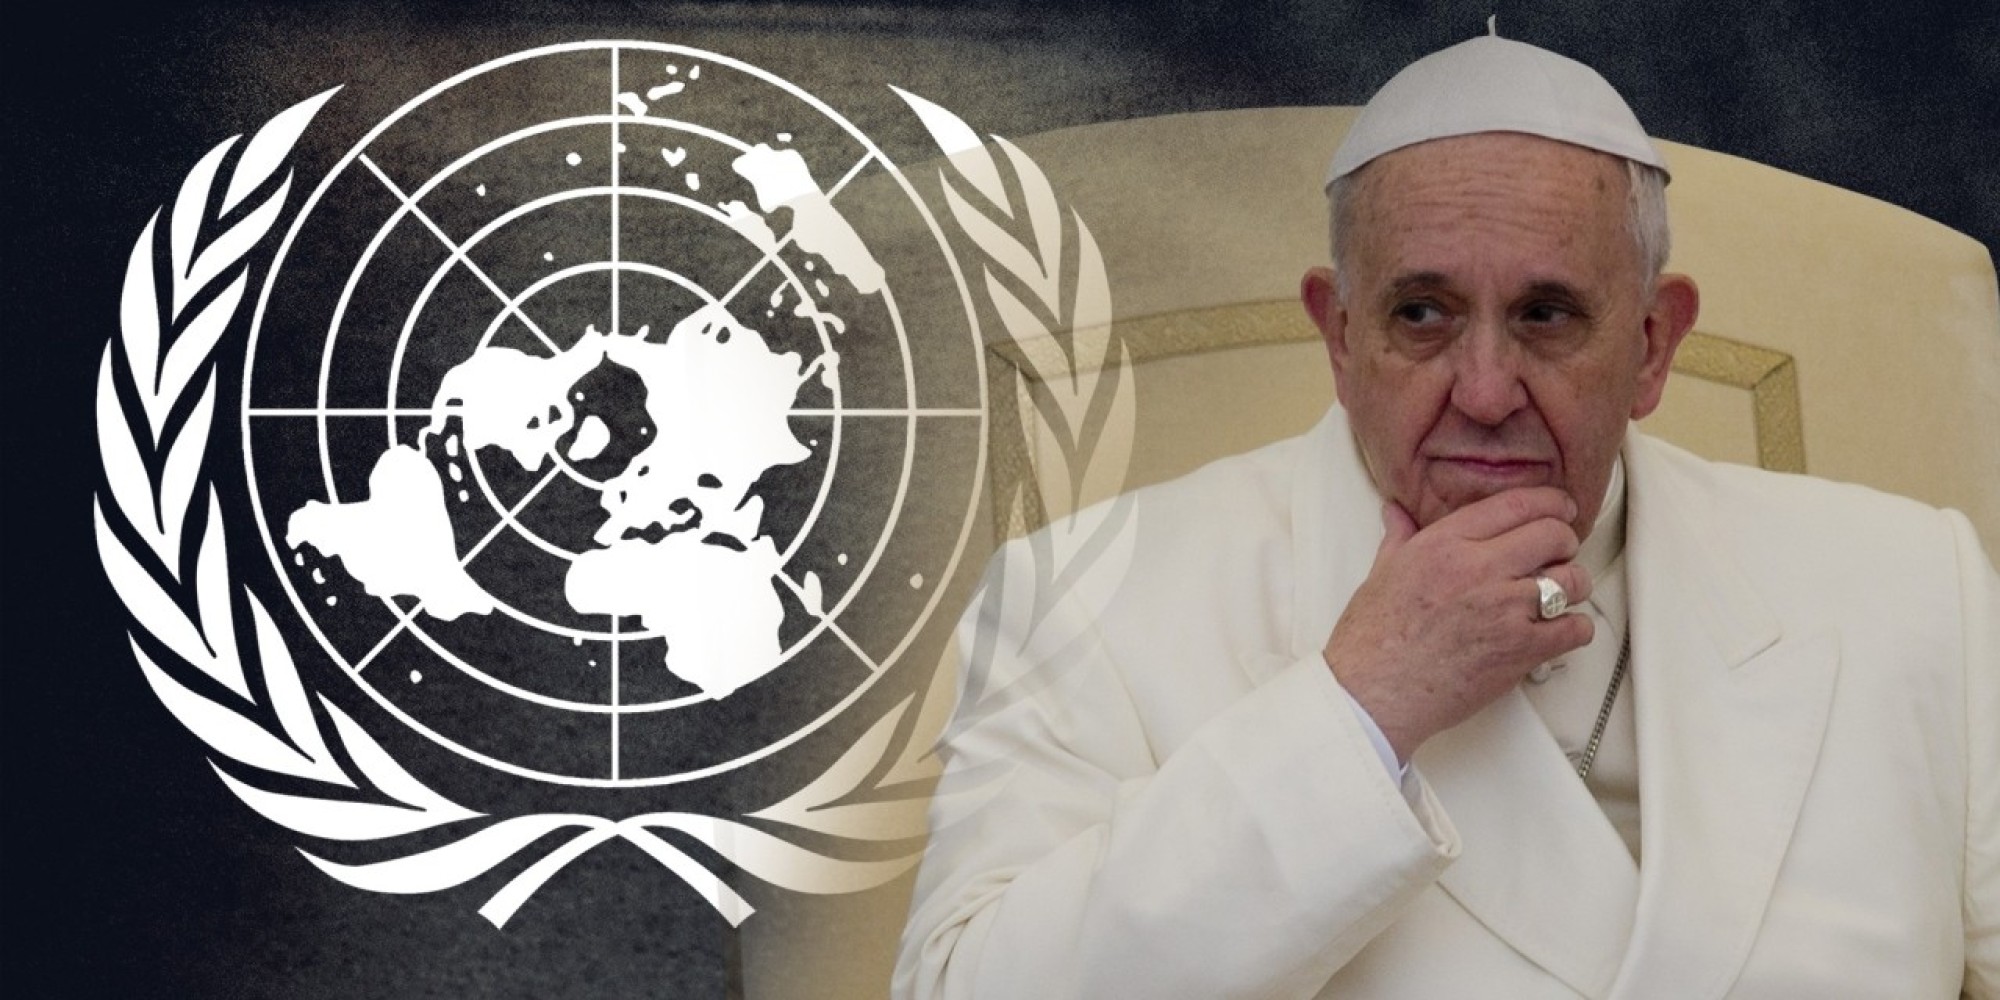 Apa yang akan Paus memberitahu dunia ketika ia membahas PBB bulan depan?